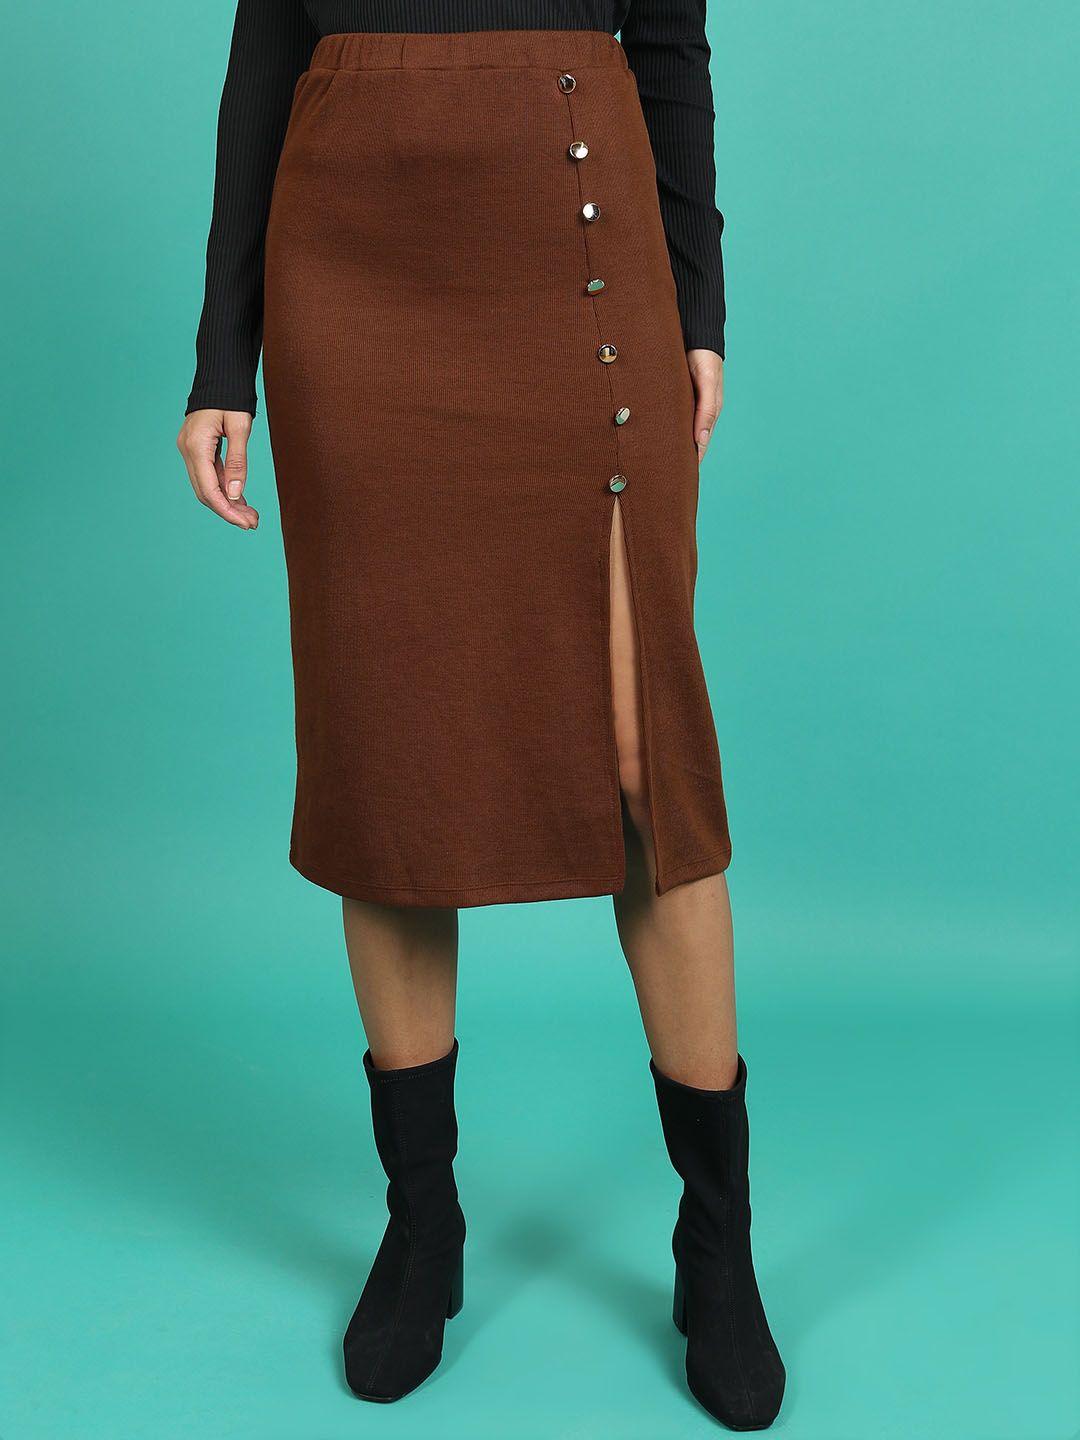 tokyo talkies brown straight knee length skirts